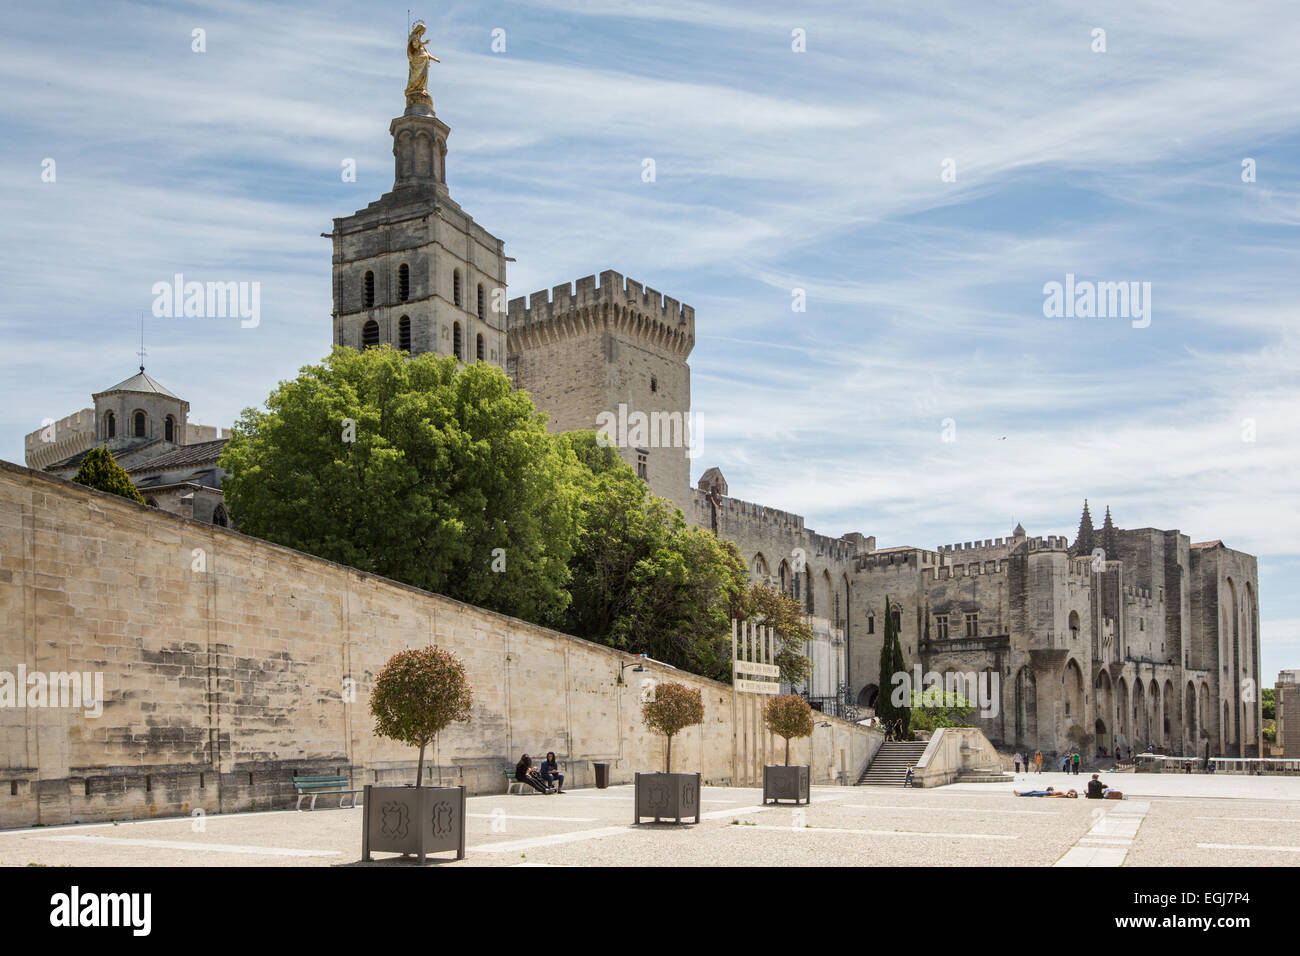 AVIGNON, Frankreich - 12. Mai 2014: Ein Blick auf den historischen päpstlichen Palast stammt aus dem Mittelalter. Stockfoto